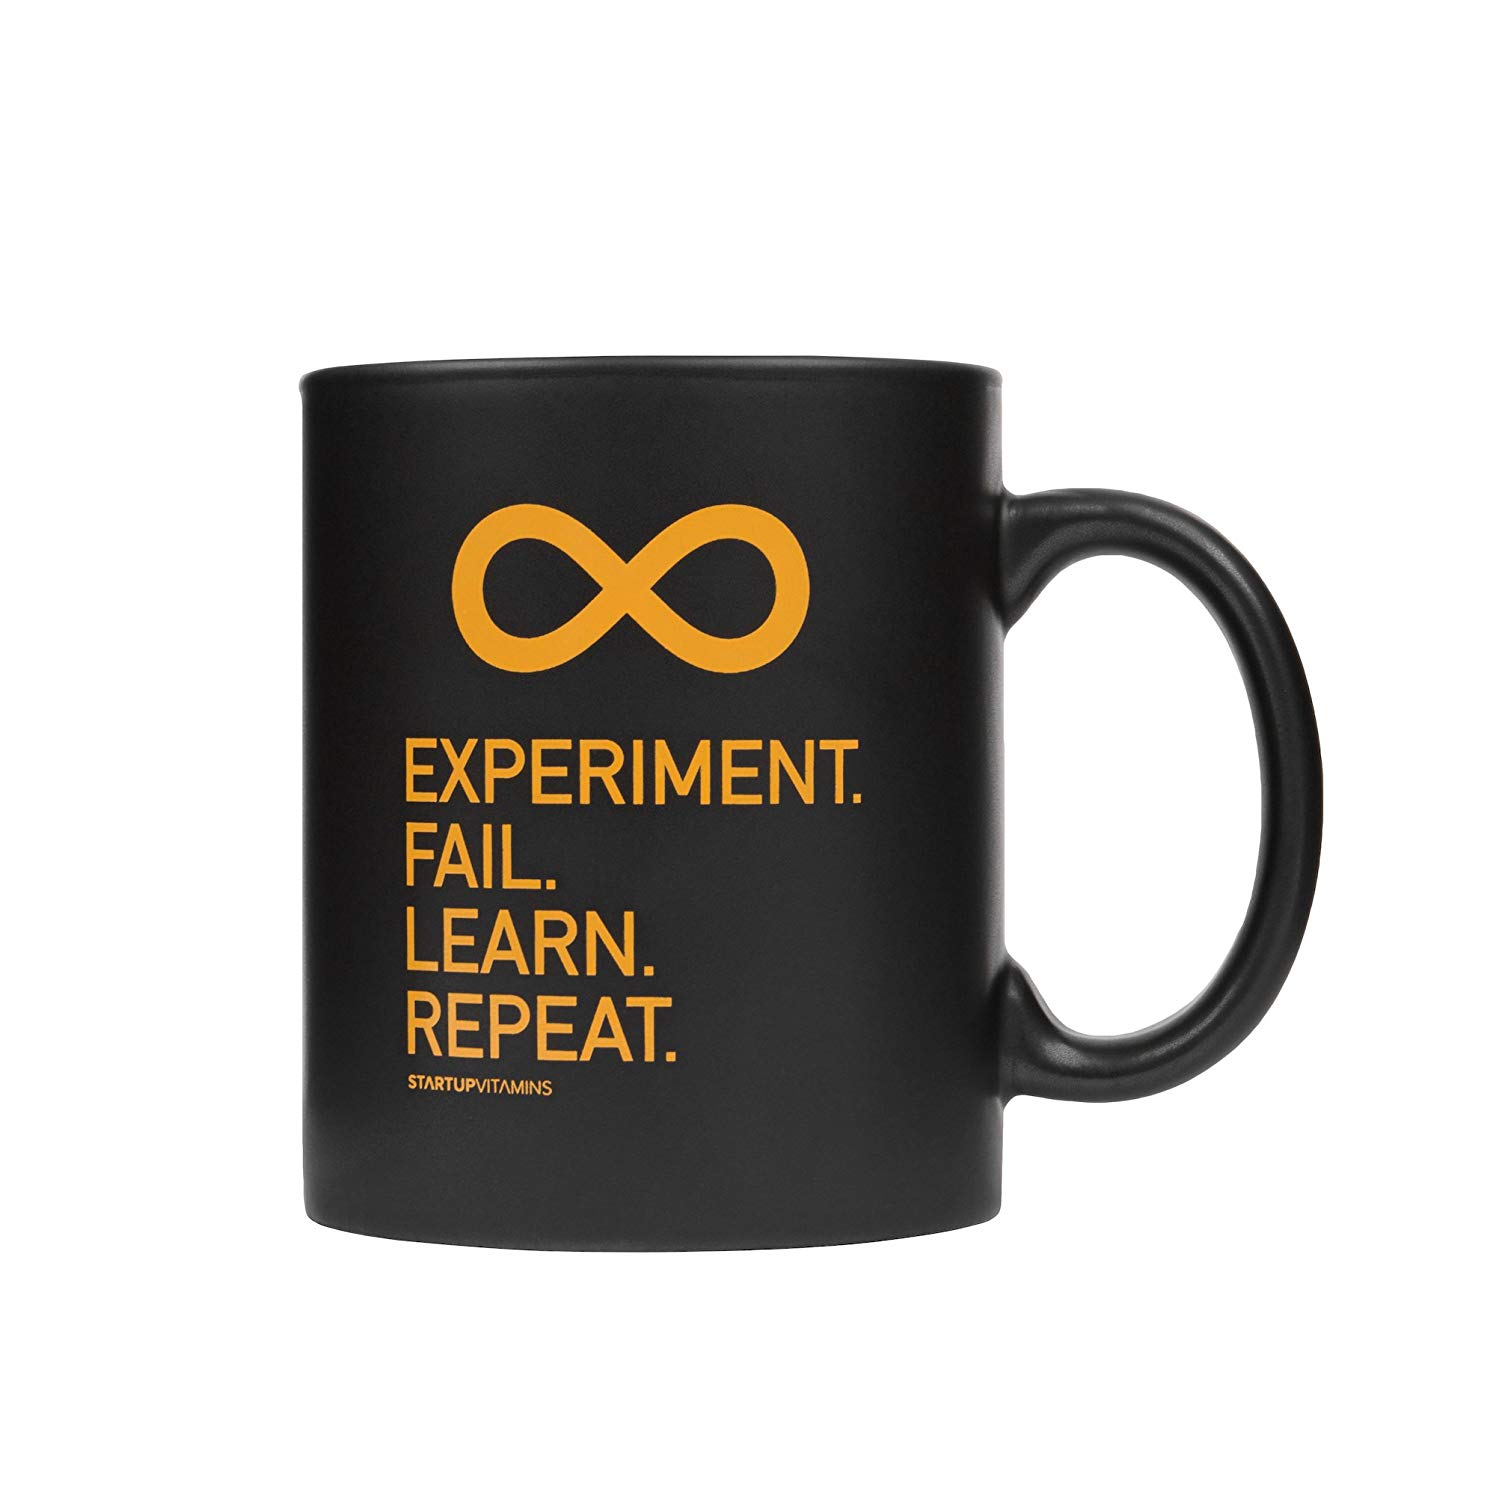 Coffee Mug “Experiment. Fail. Learn. Repeat.”